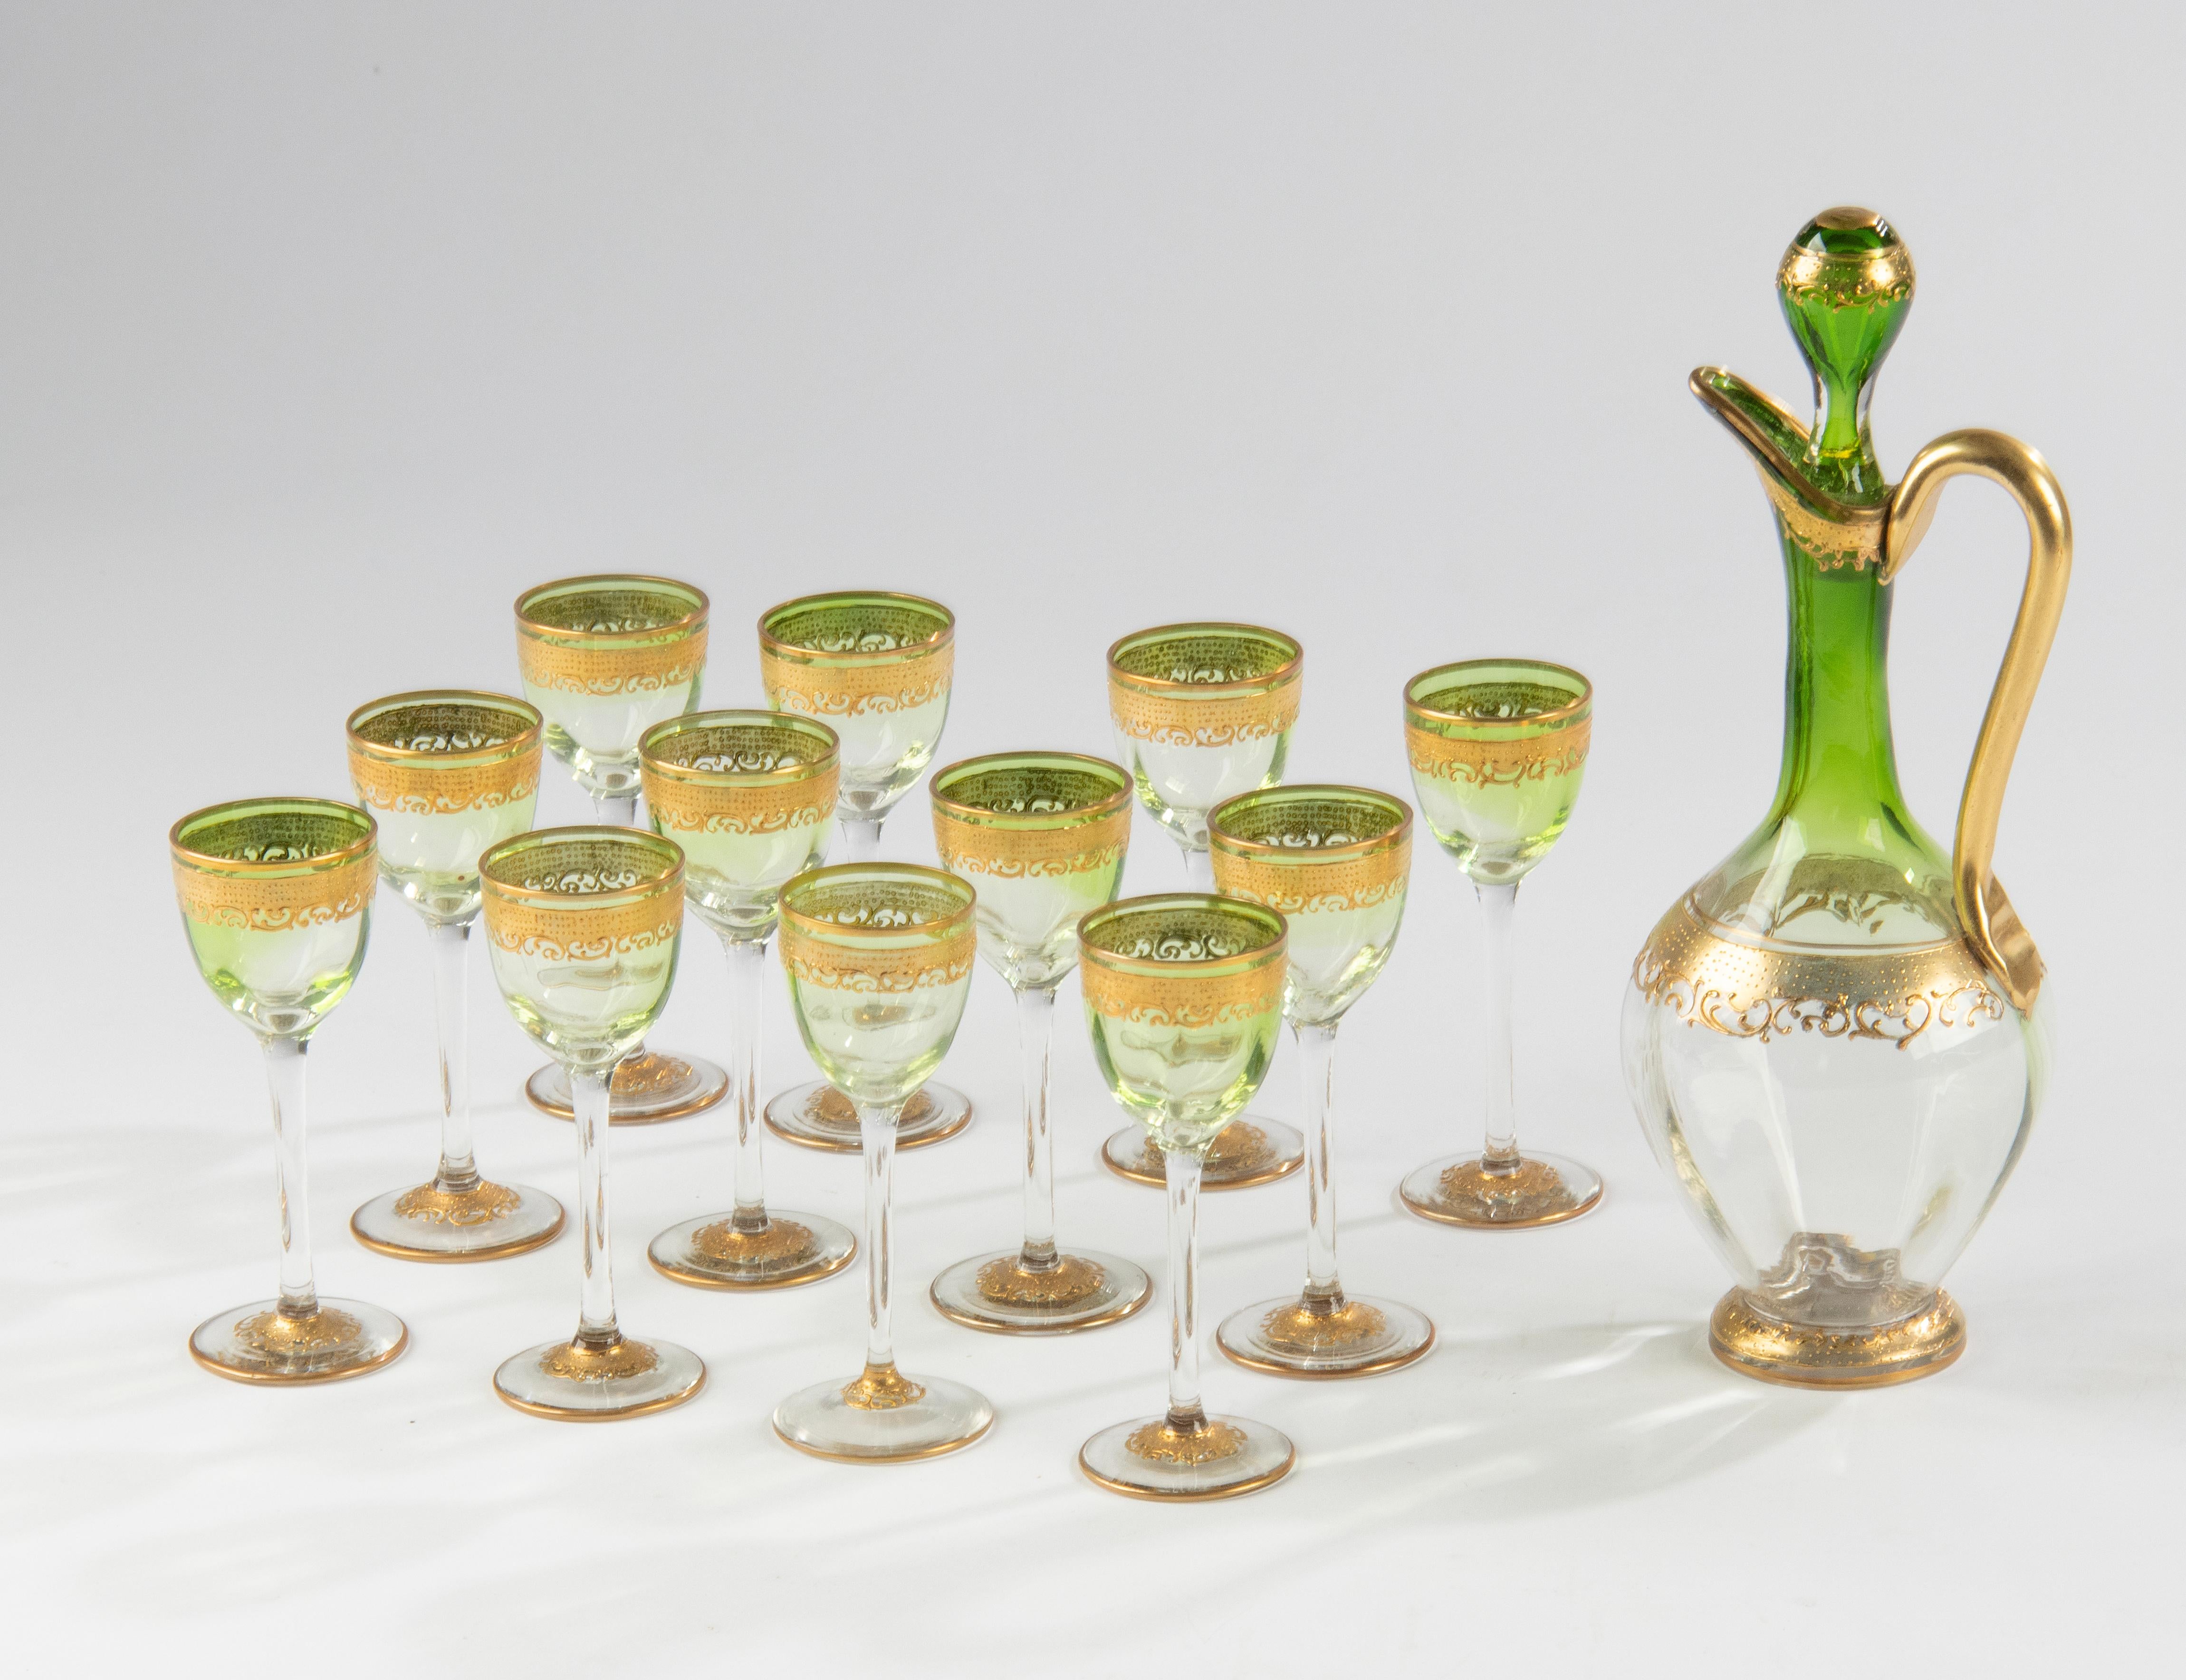 Un joli service à liqueur en cristal, fabriqué par la célèbre marque Moser Karlsbad. 
Les lunettes ont une belle couleur verte dégradée et des accents dorés. La carafe assortie rend ce set encore plus spécial. 
Dimensions : la carafe mesure 24 cm